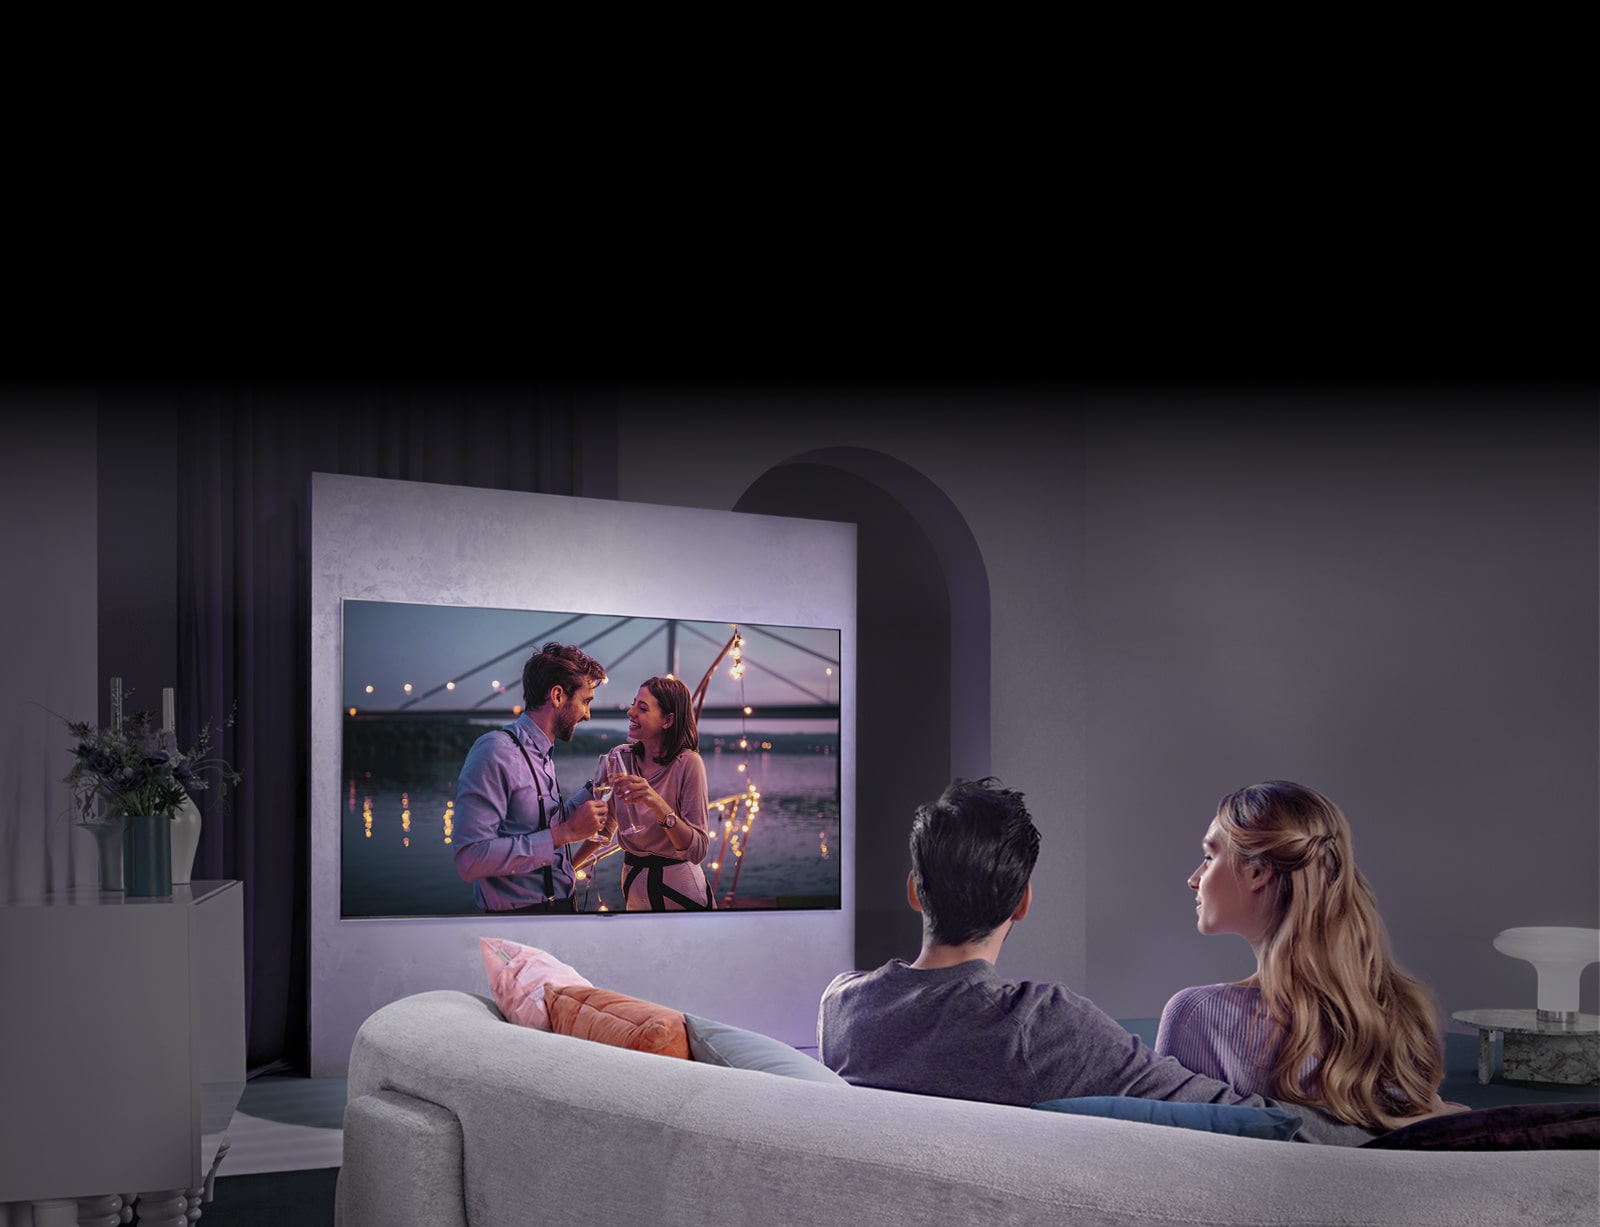 Человек, сидящий на диване, смотрит фильм по большому телевизору на стене.